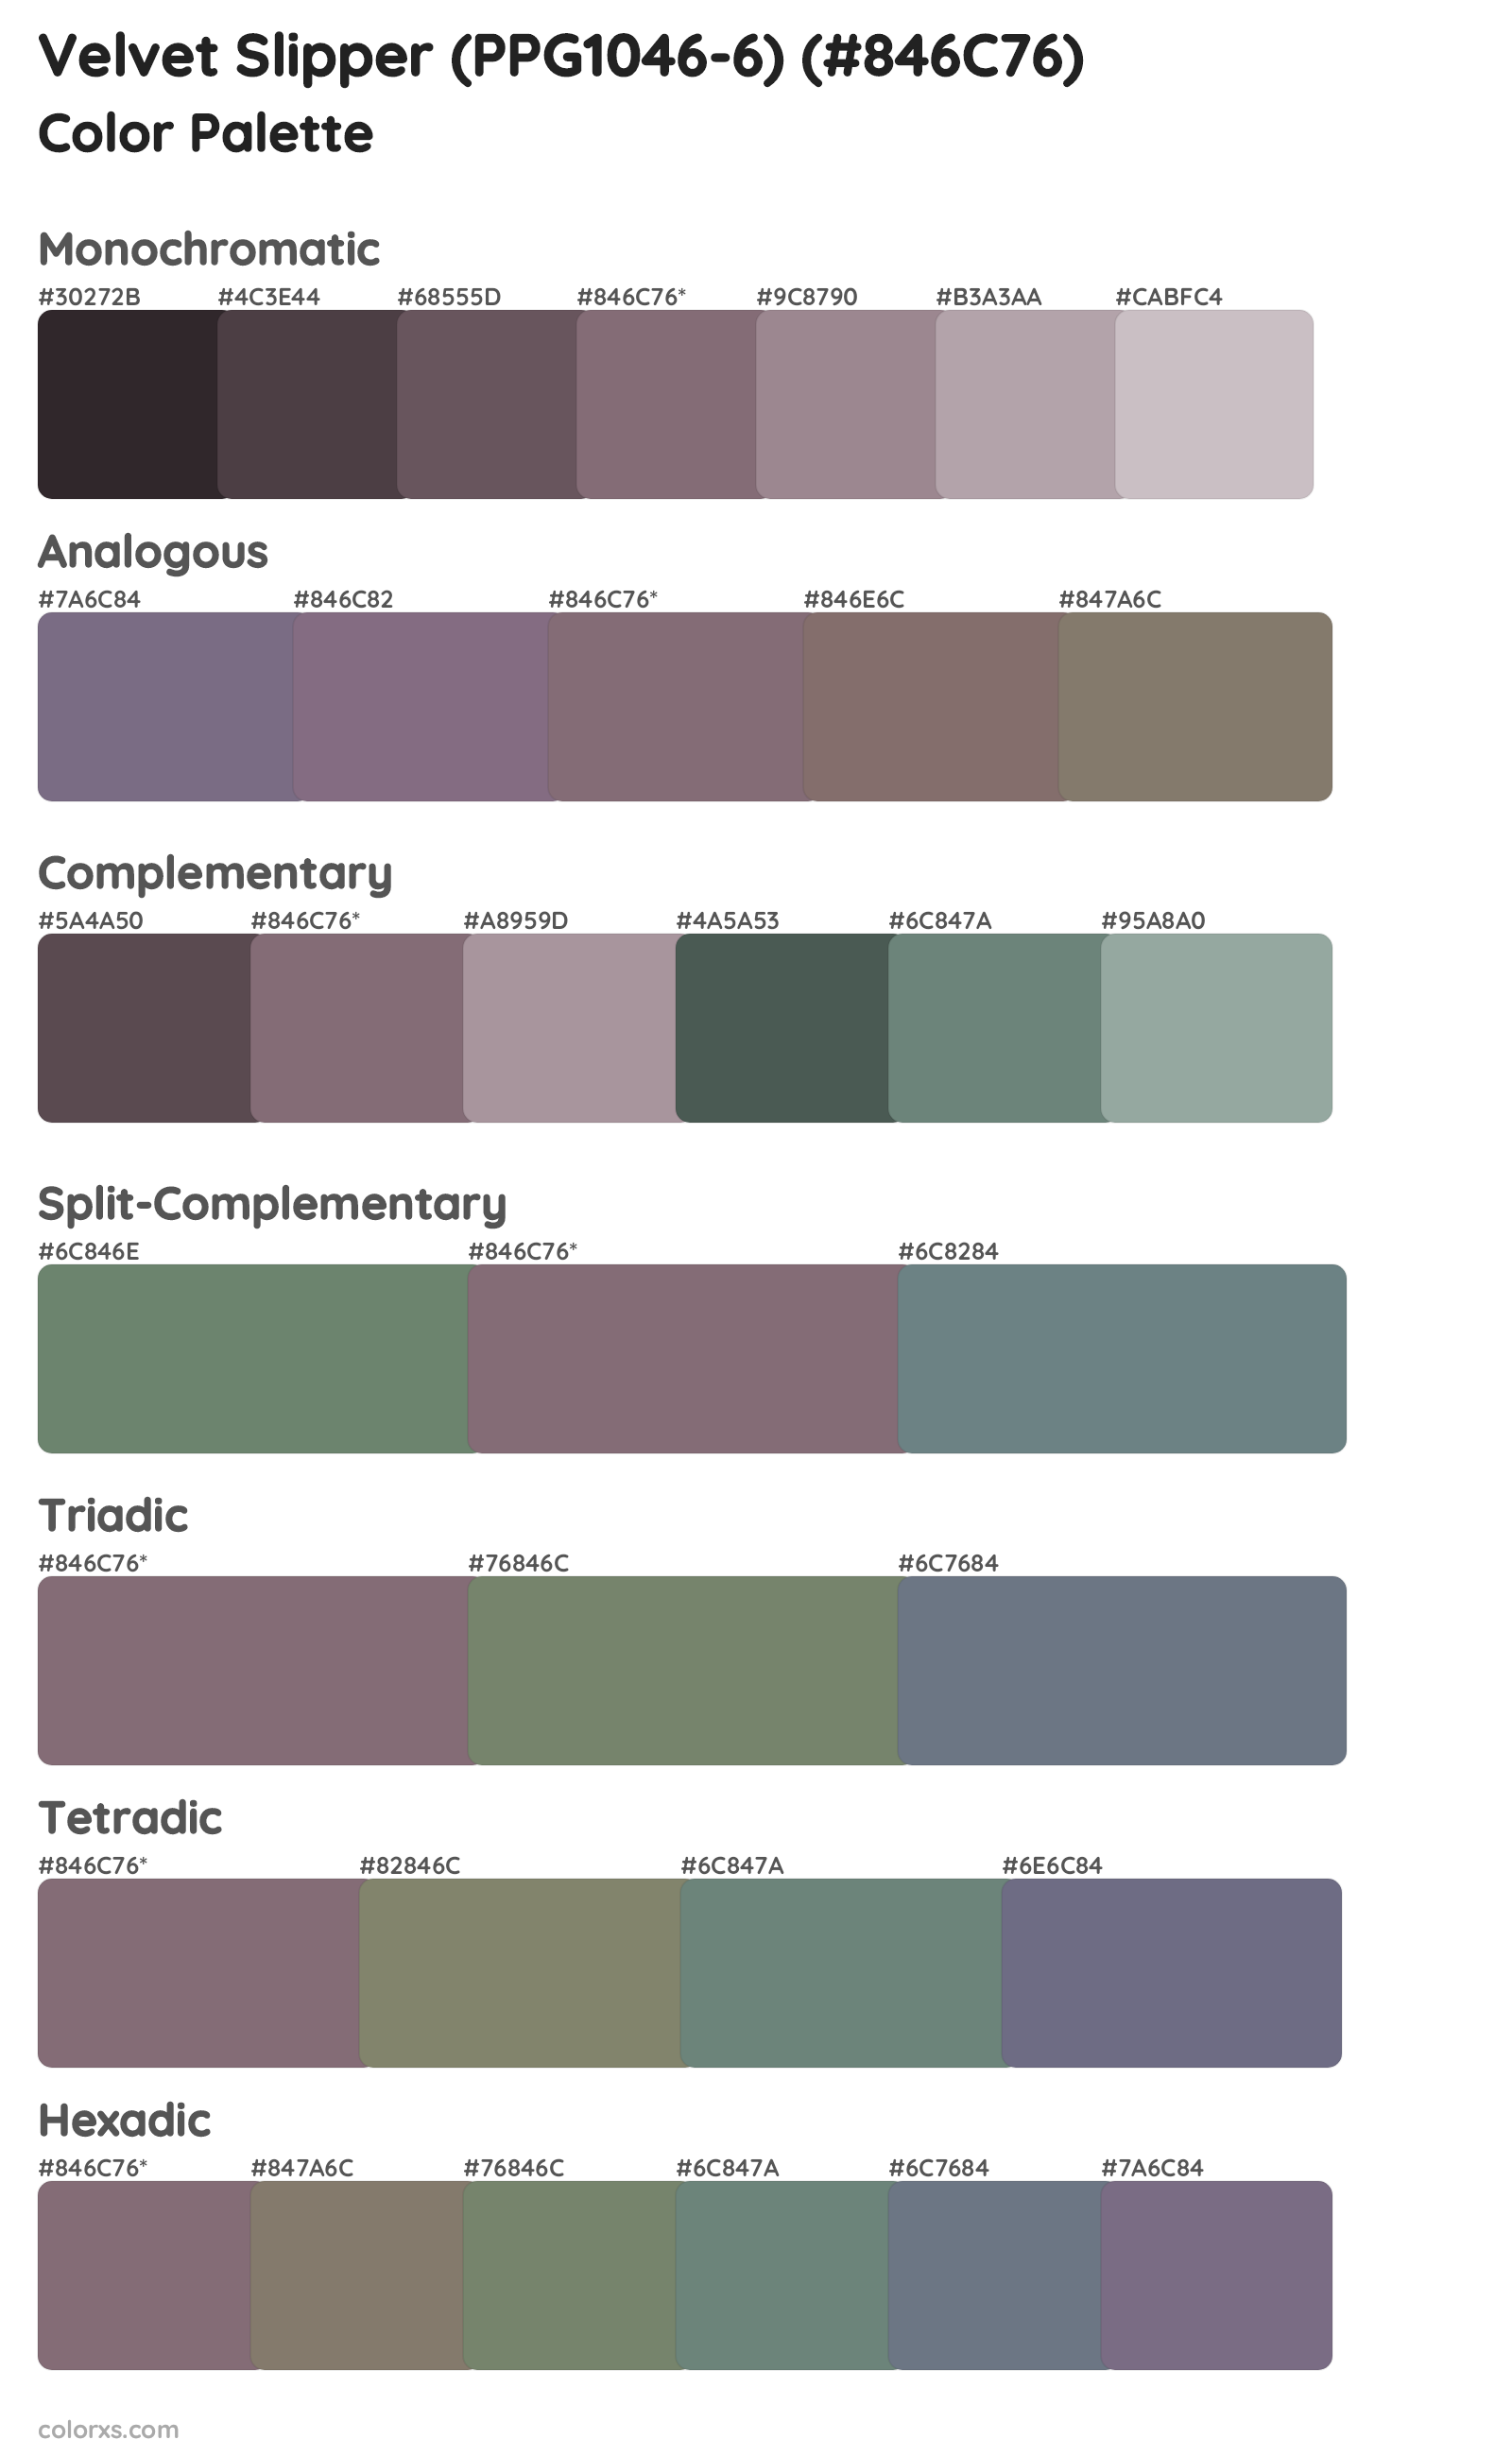 Velvet Slipper (PPG1046-6) Color Scheme Palettes